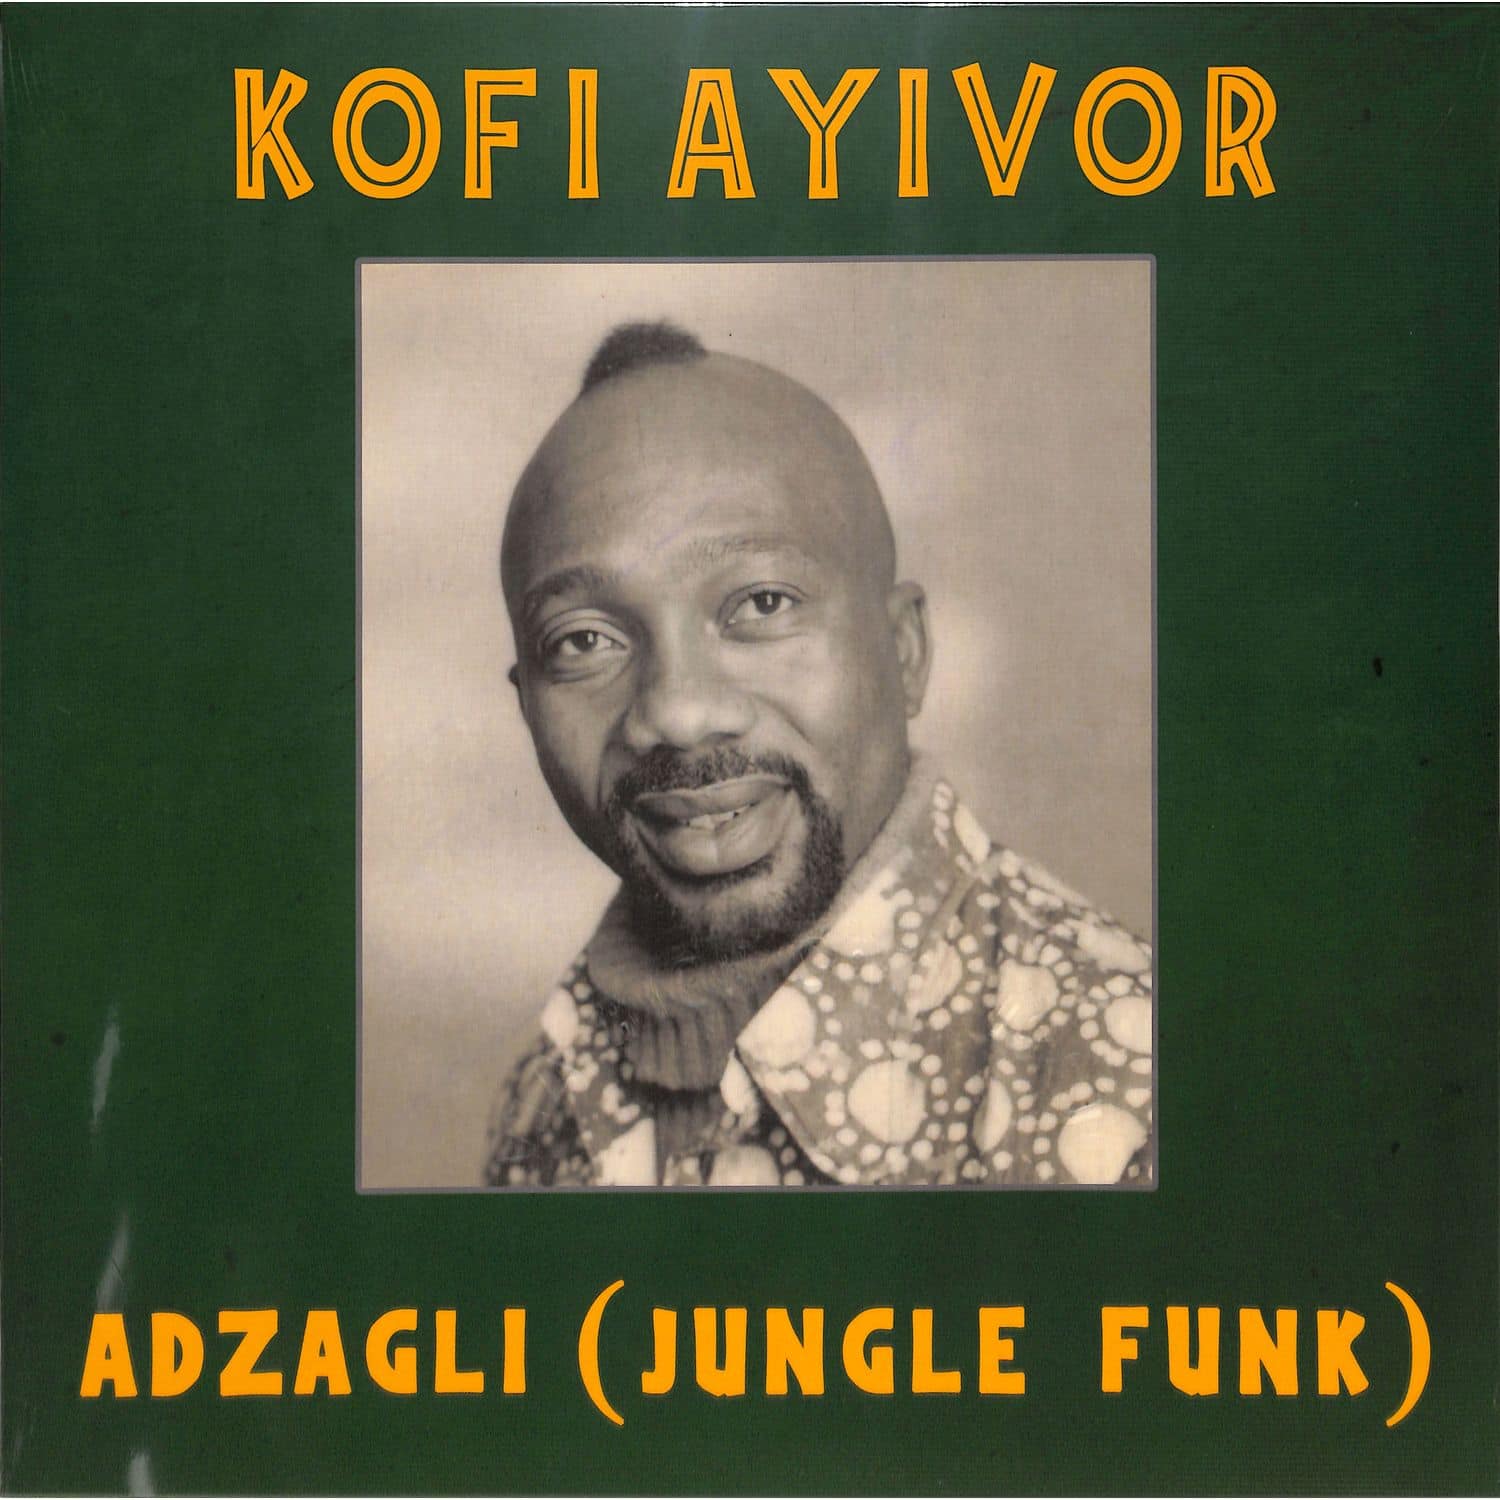 Kofi Ayivor - ADZAGLI: JUNGLE FUNK 